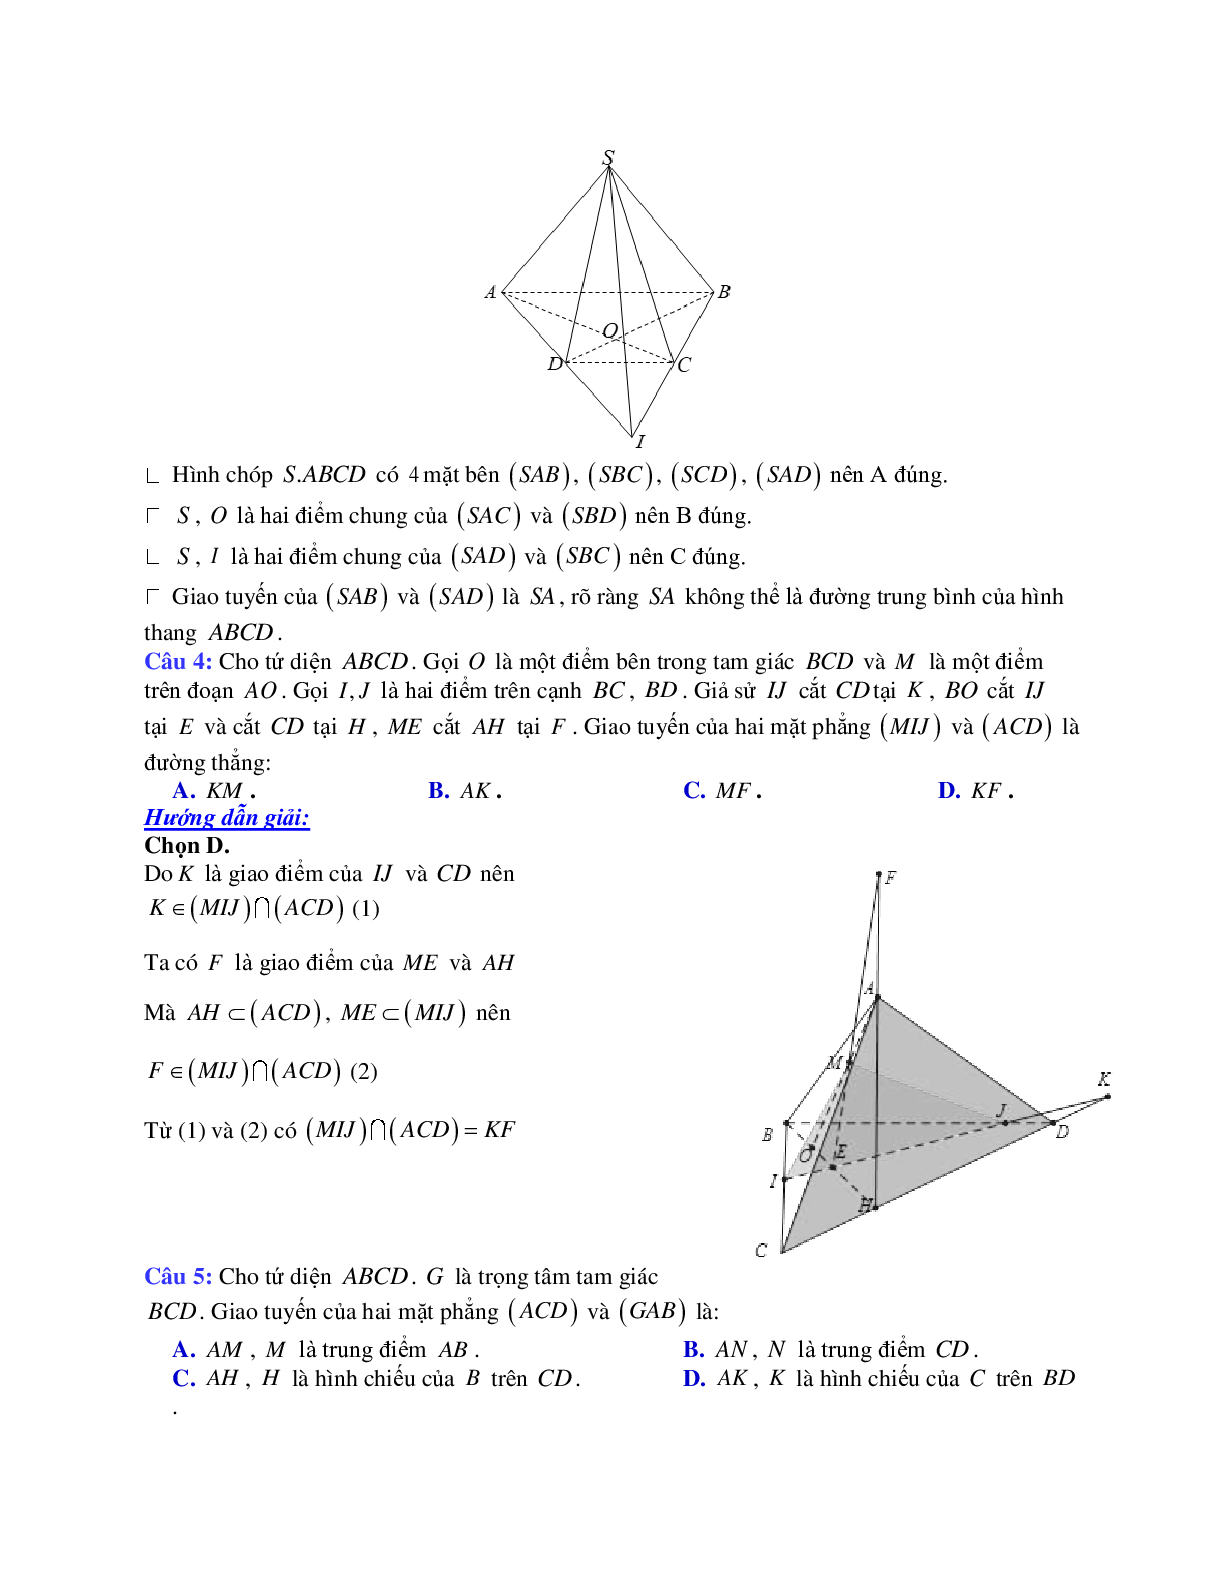 Cách xác định giao tuyến của hai mặt phẳng (trang 2)